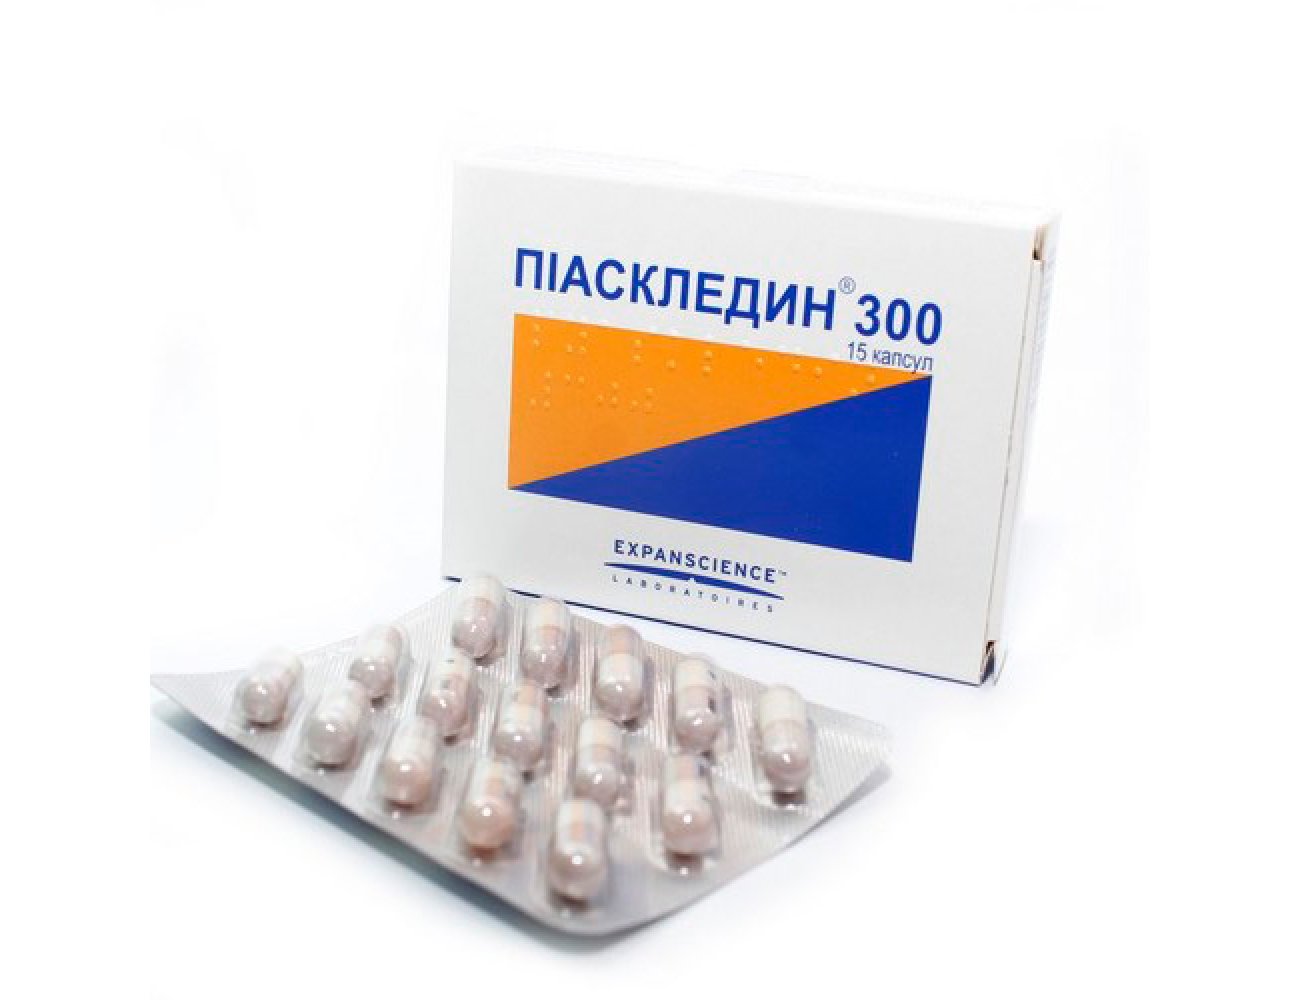 Пиаскледин 300 (капсулы, 15 шт, 300 мг) - цена,  онлайн  .